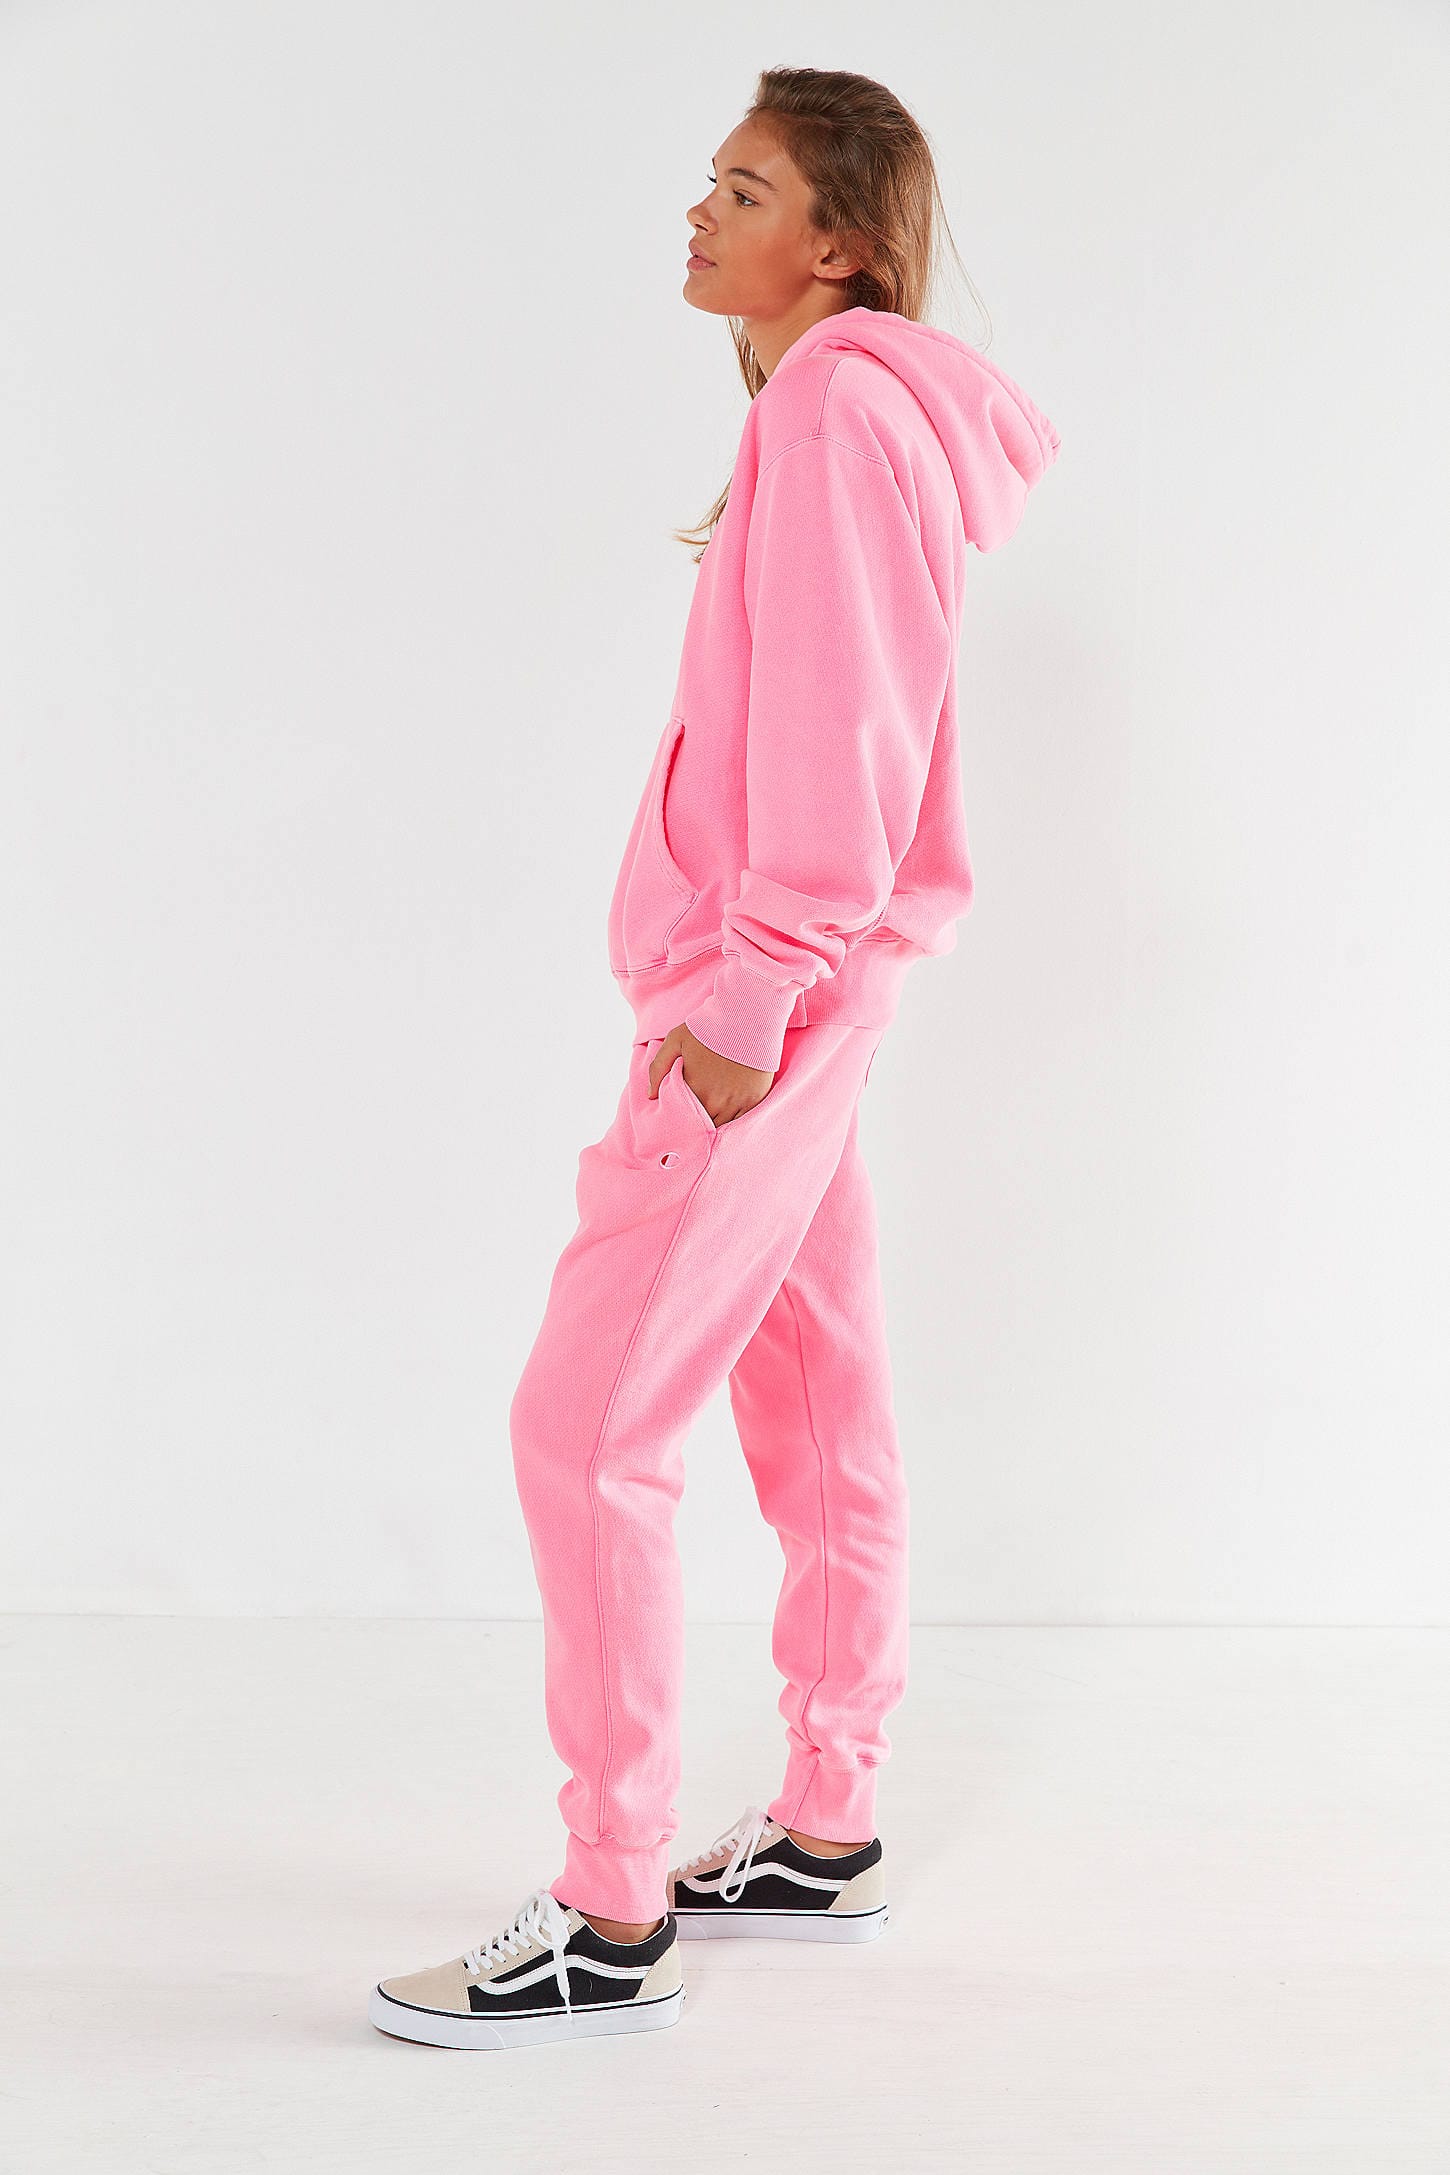 pink hoodie and sweatpants